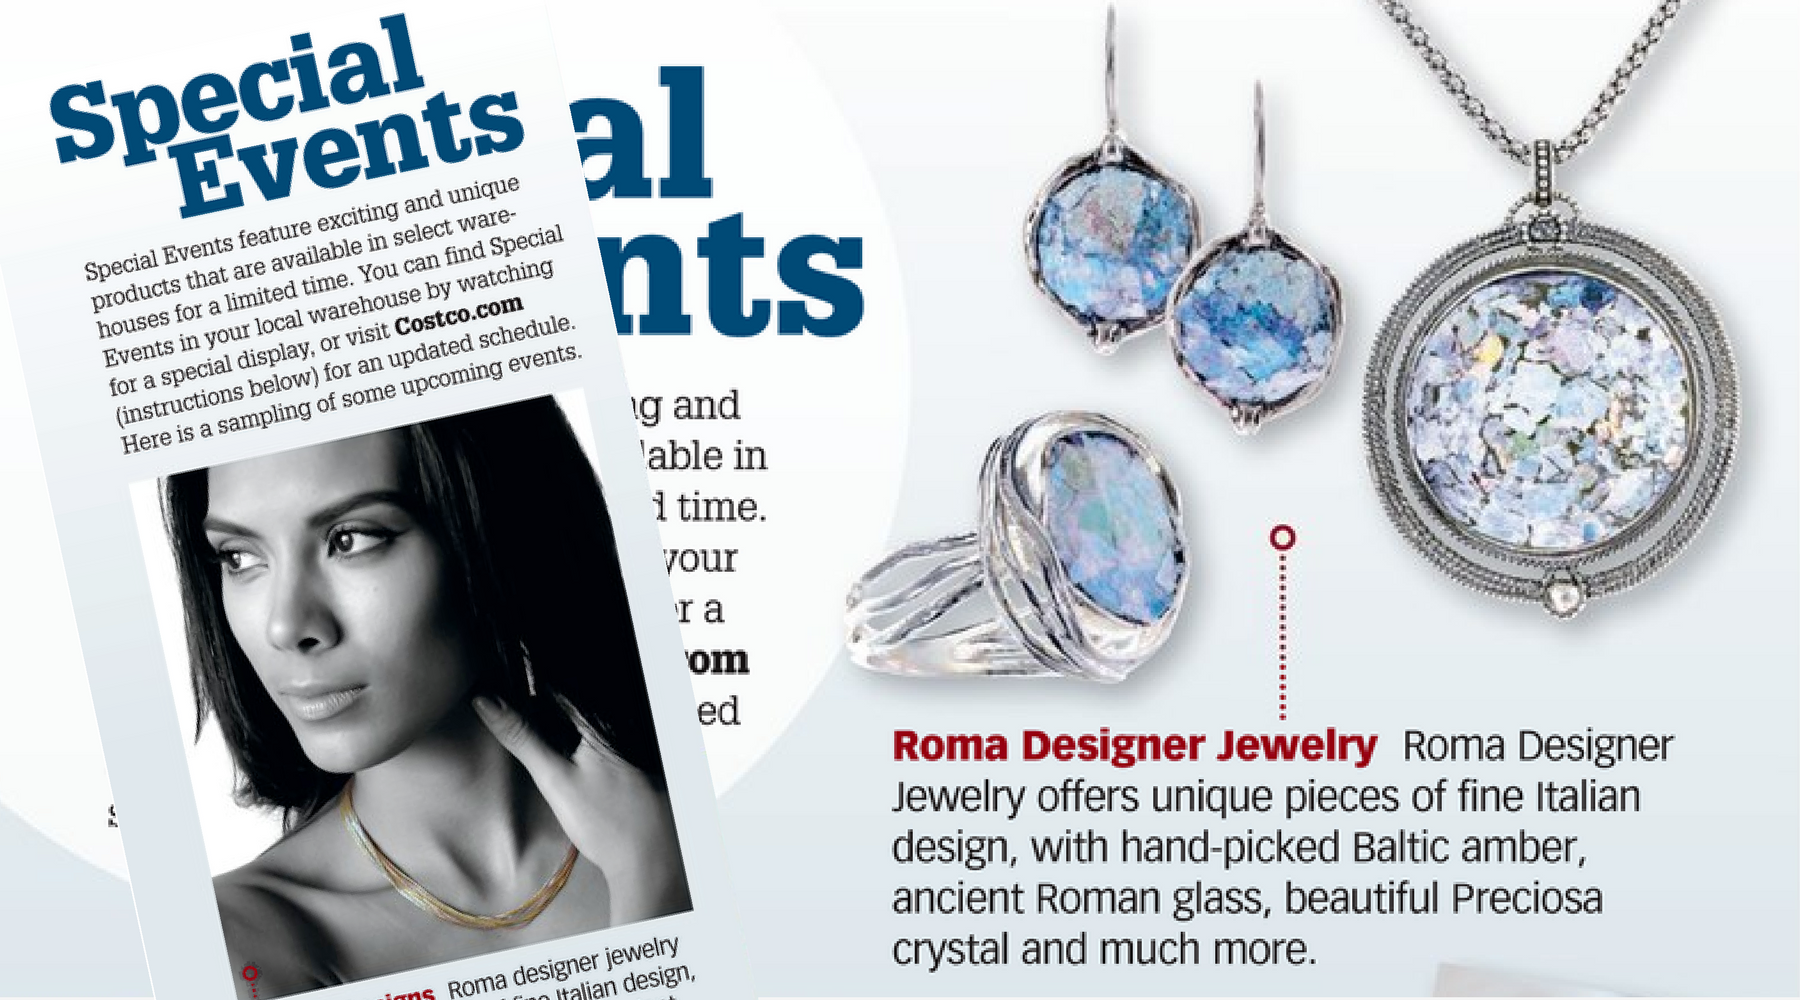 Roma Costco Jewelry Shows